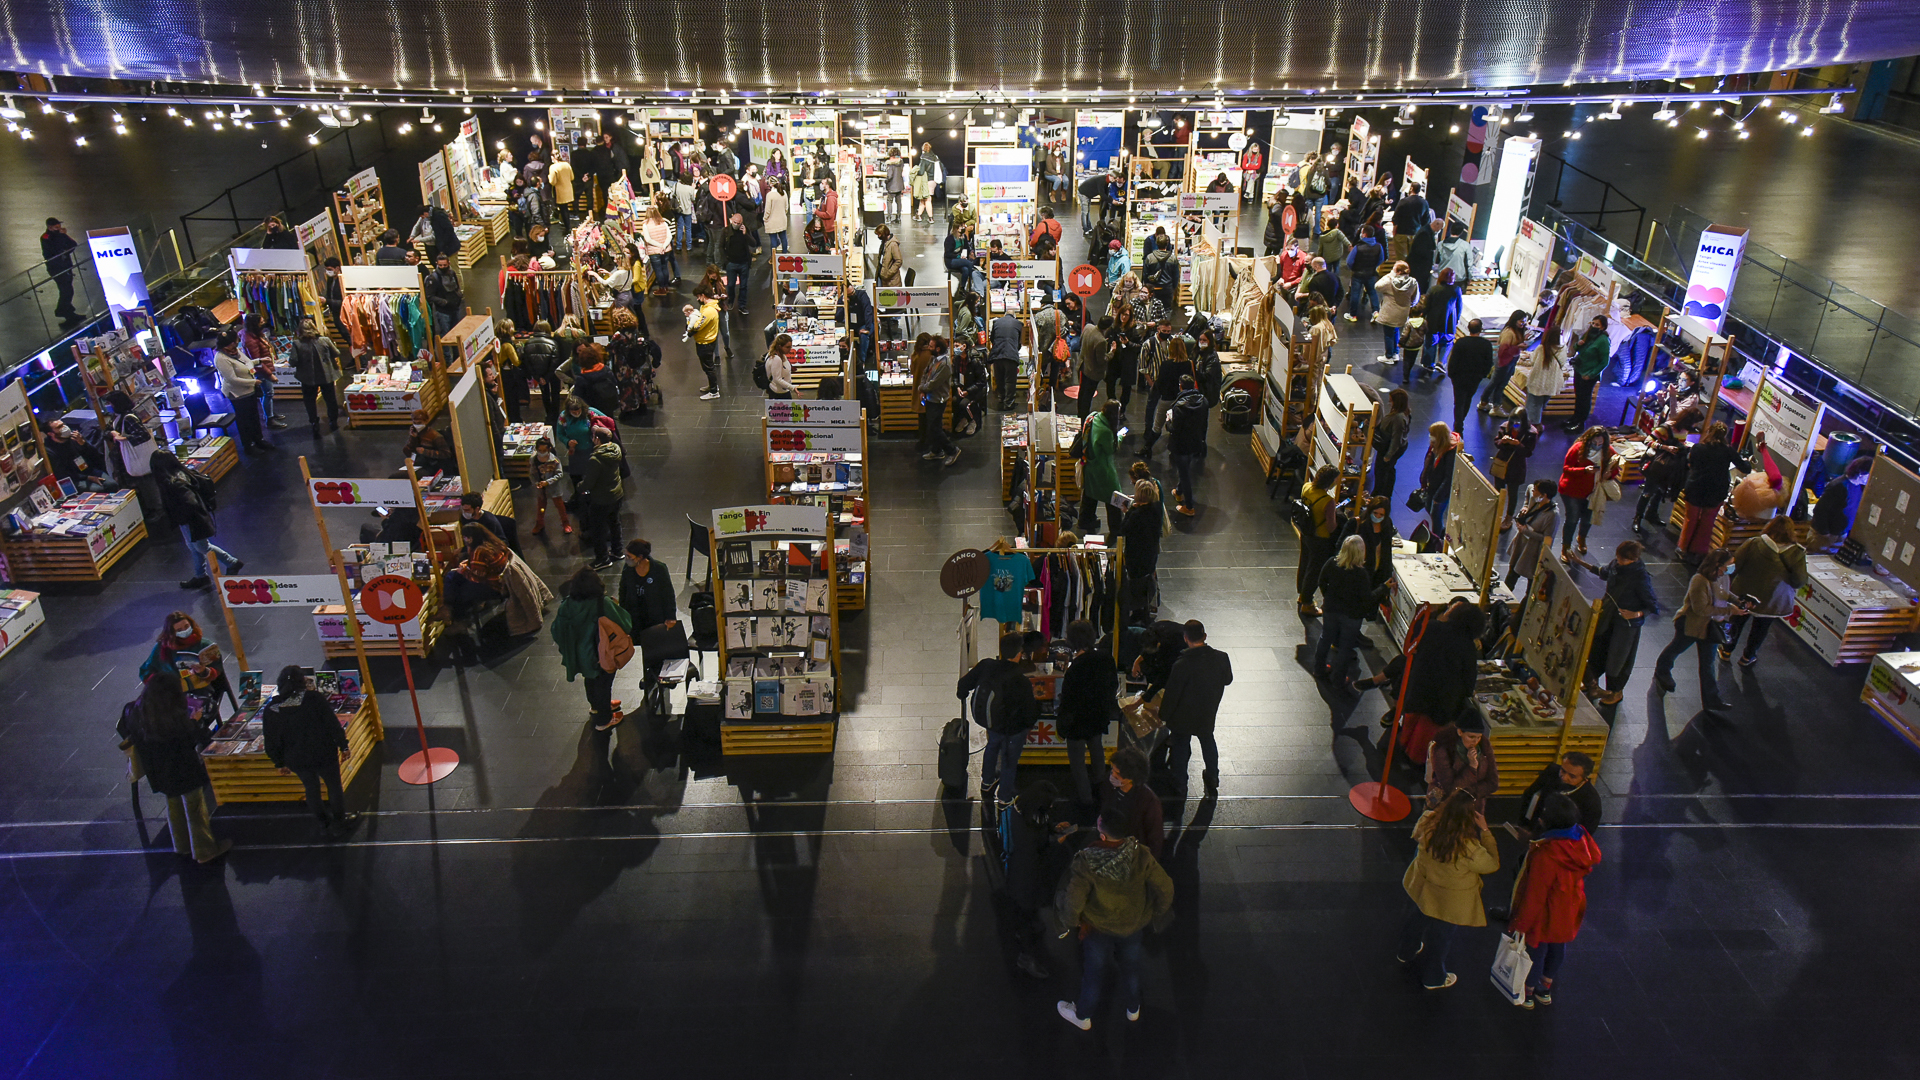 La Tienda MICA, con miles de objetos y libros de productores locales (Gustavo Gavotti)